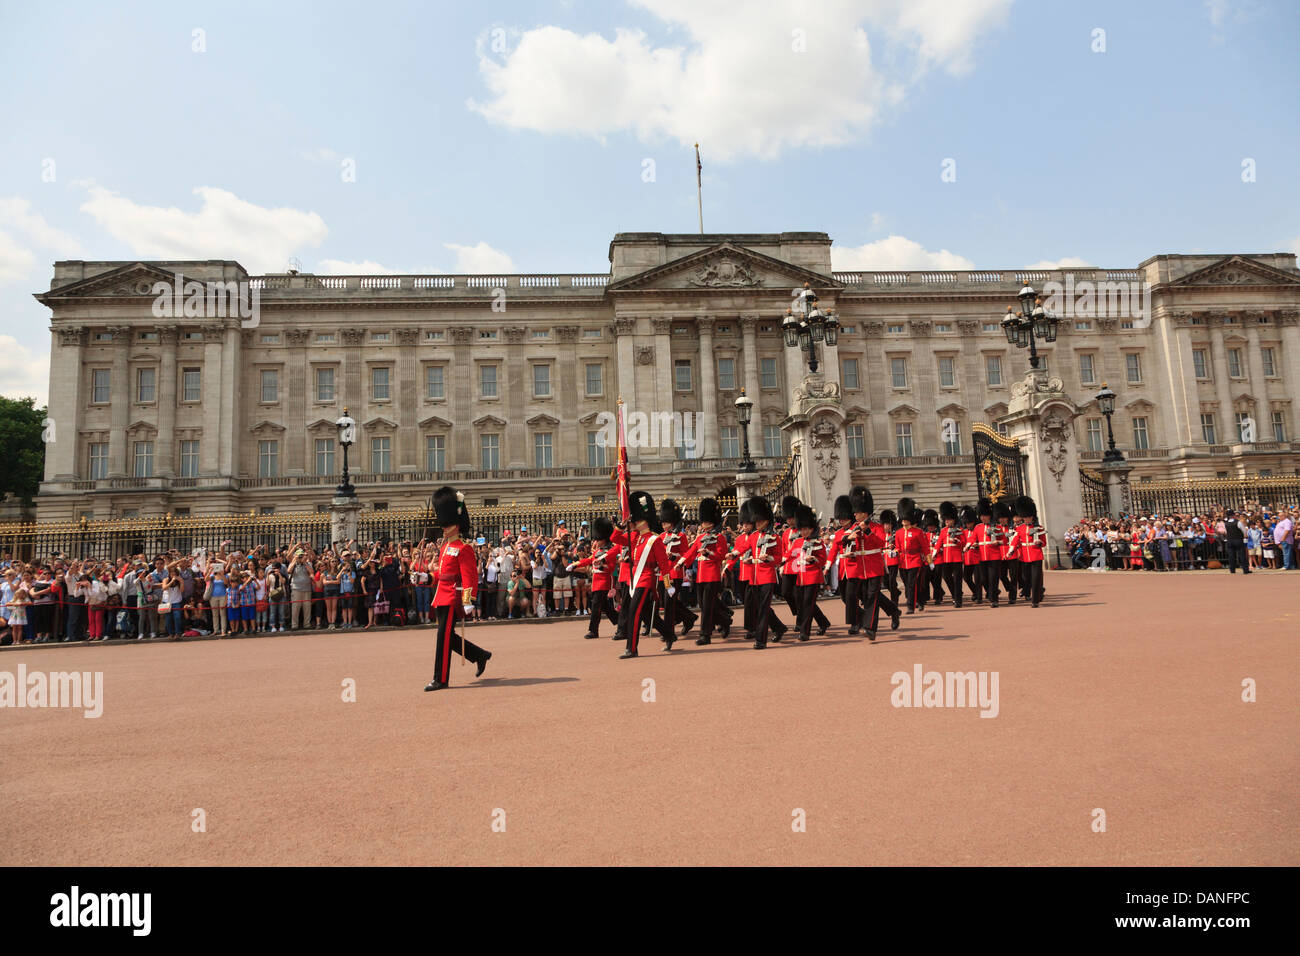 Relève de la garde, Buckingham Palace, London, UK Banque D'Images